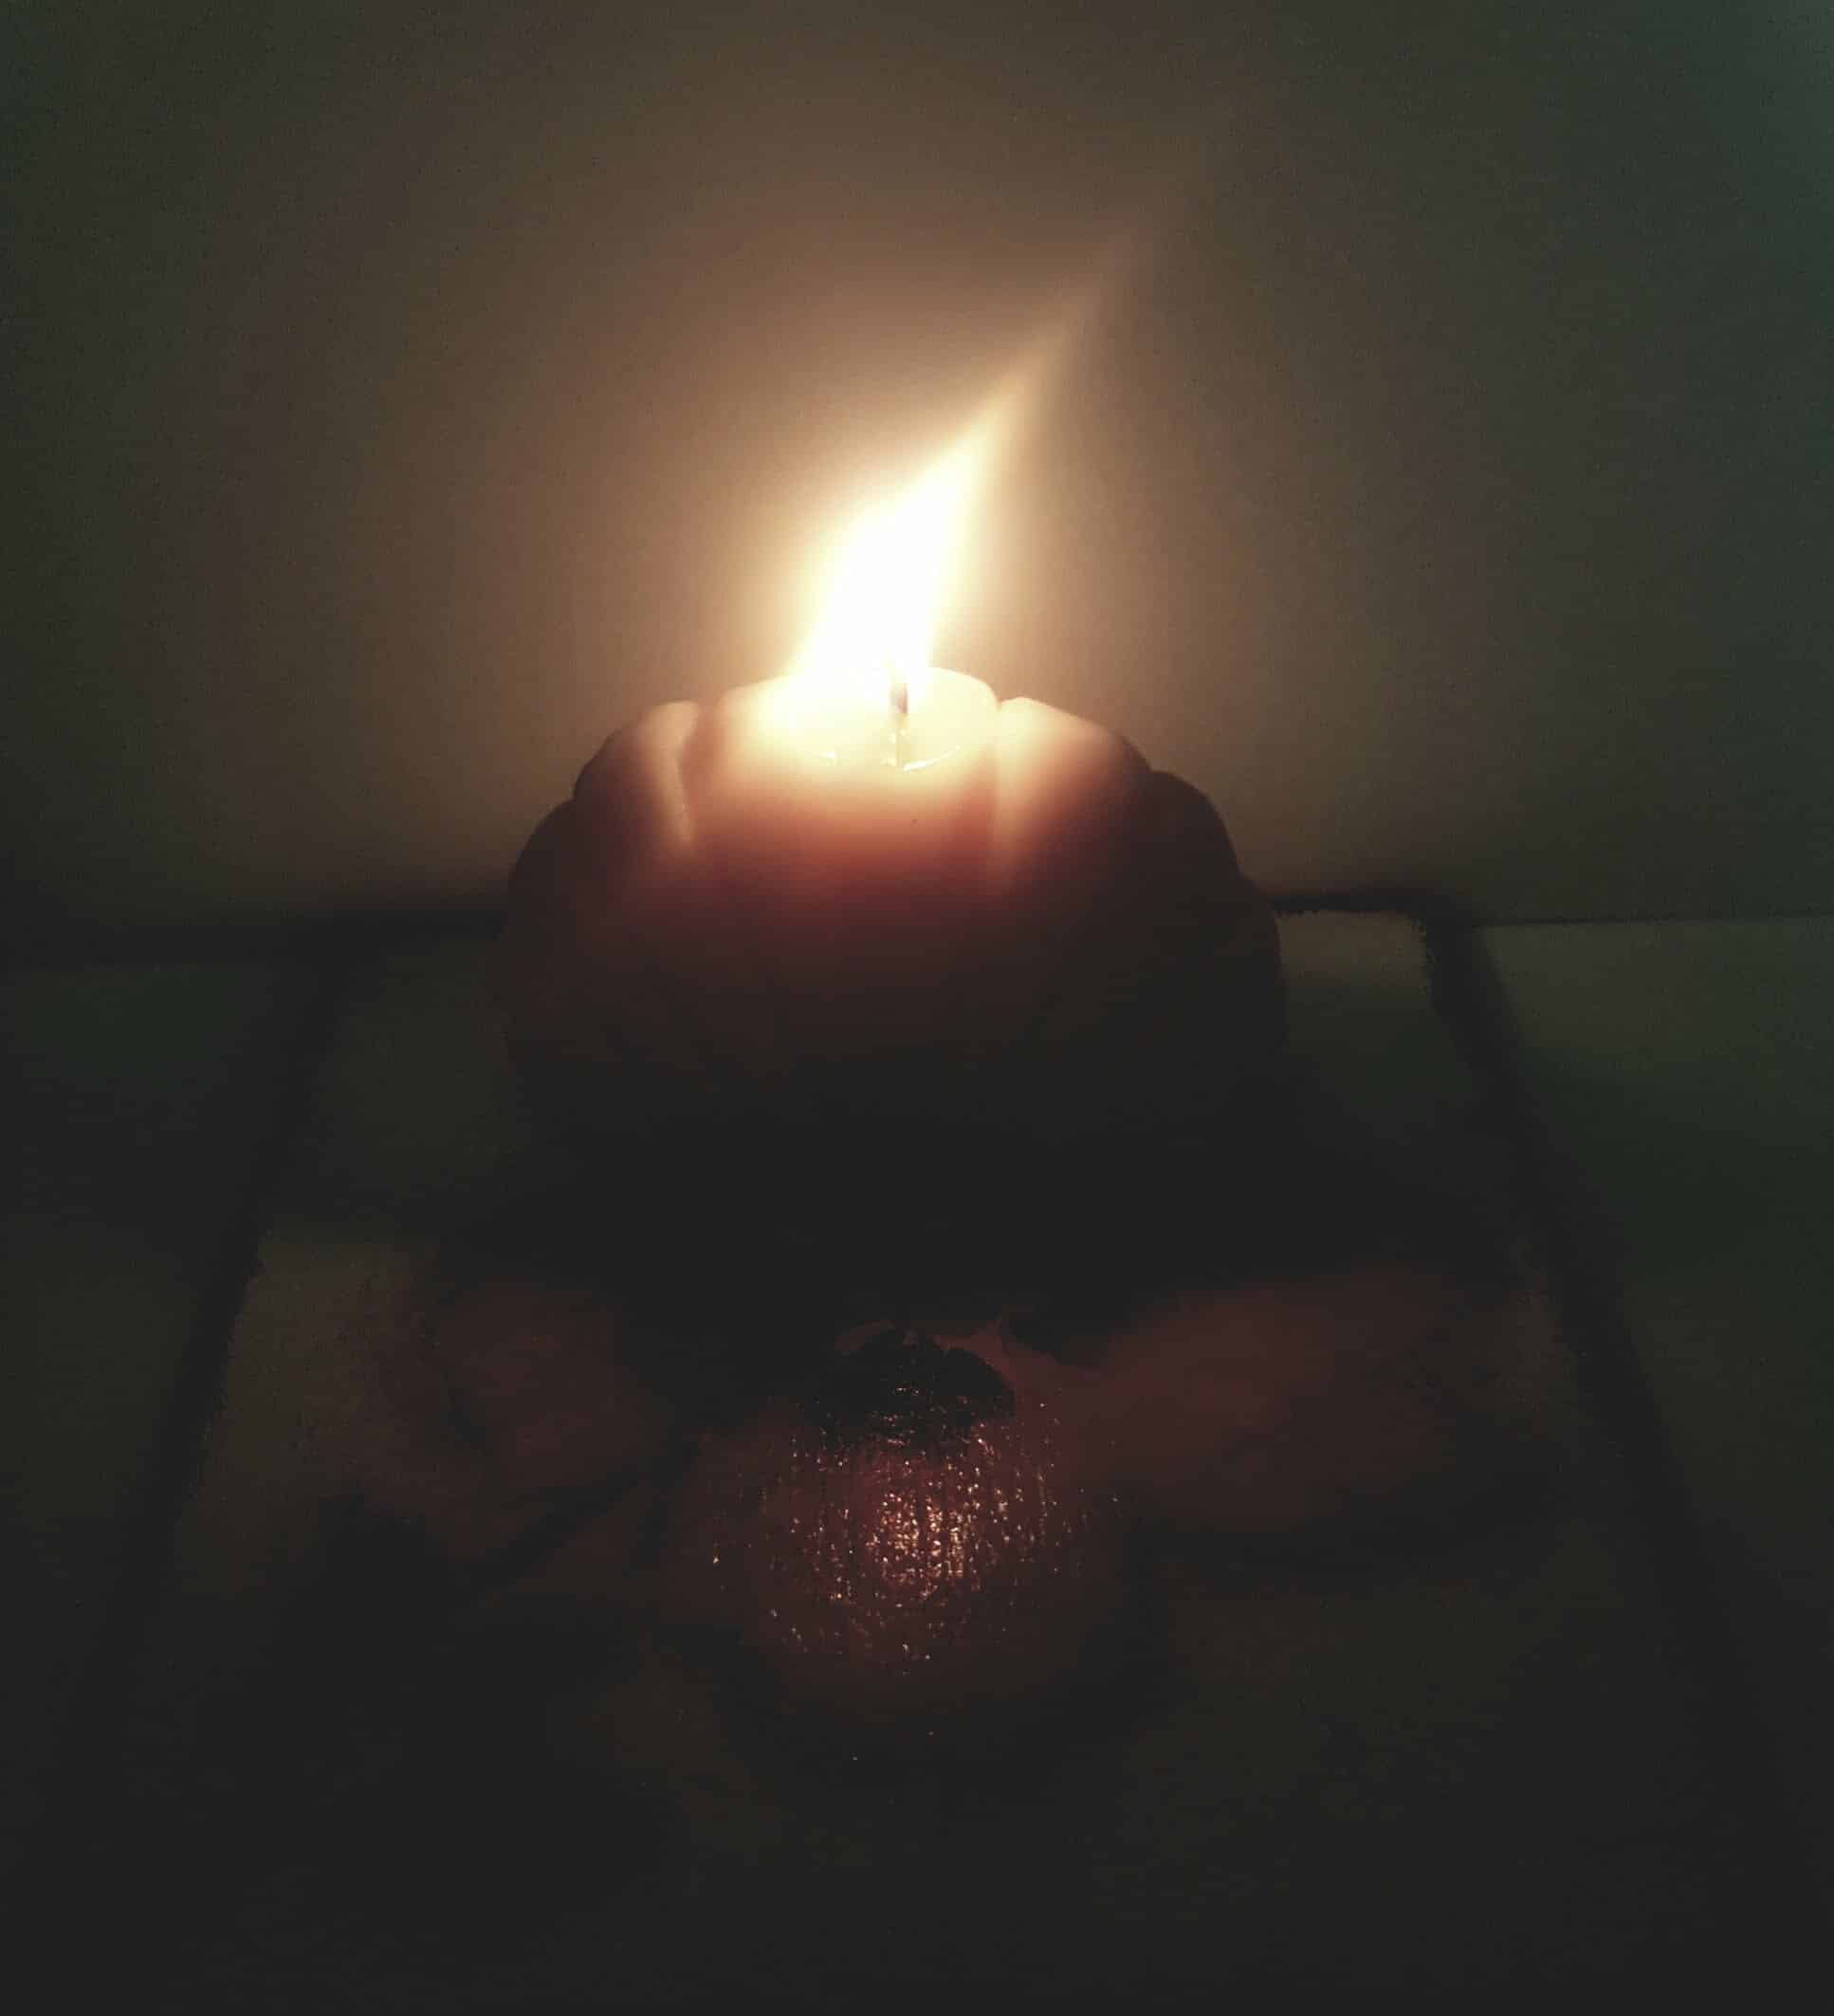 świeczka paląca się w mroku